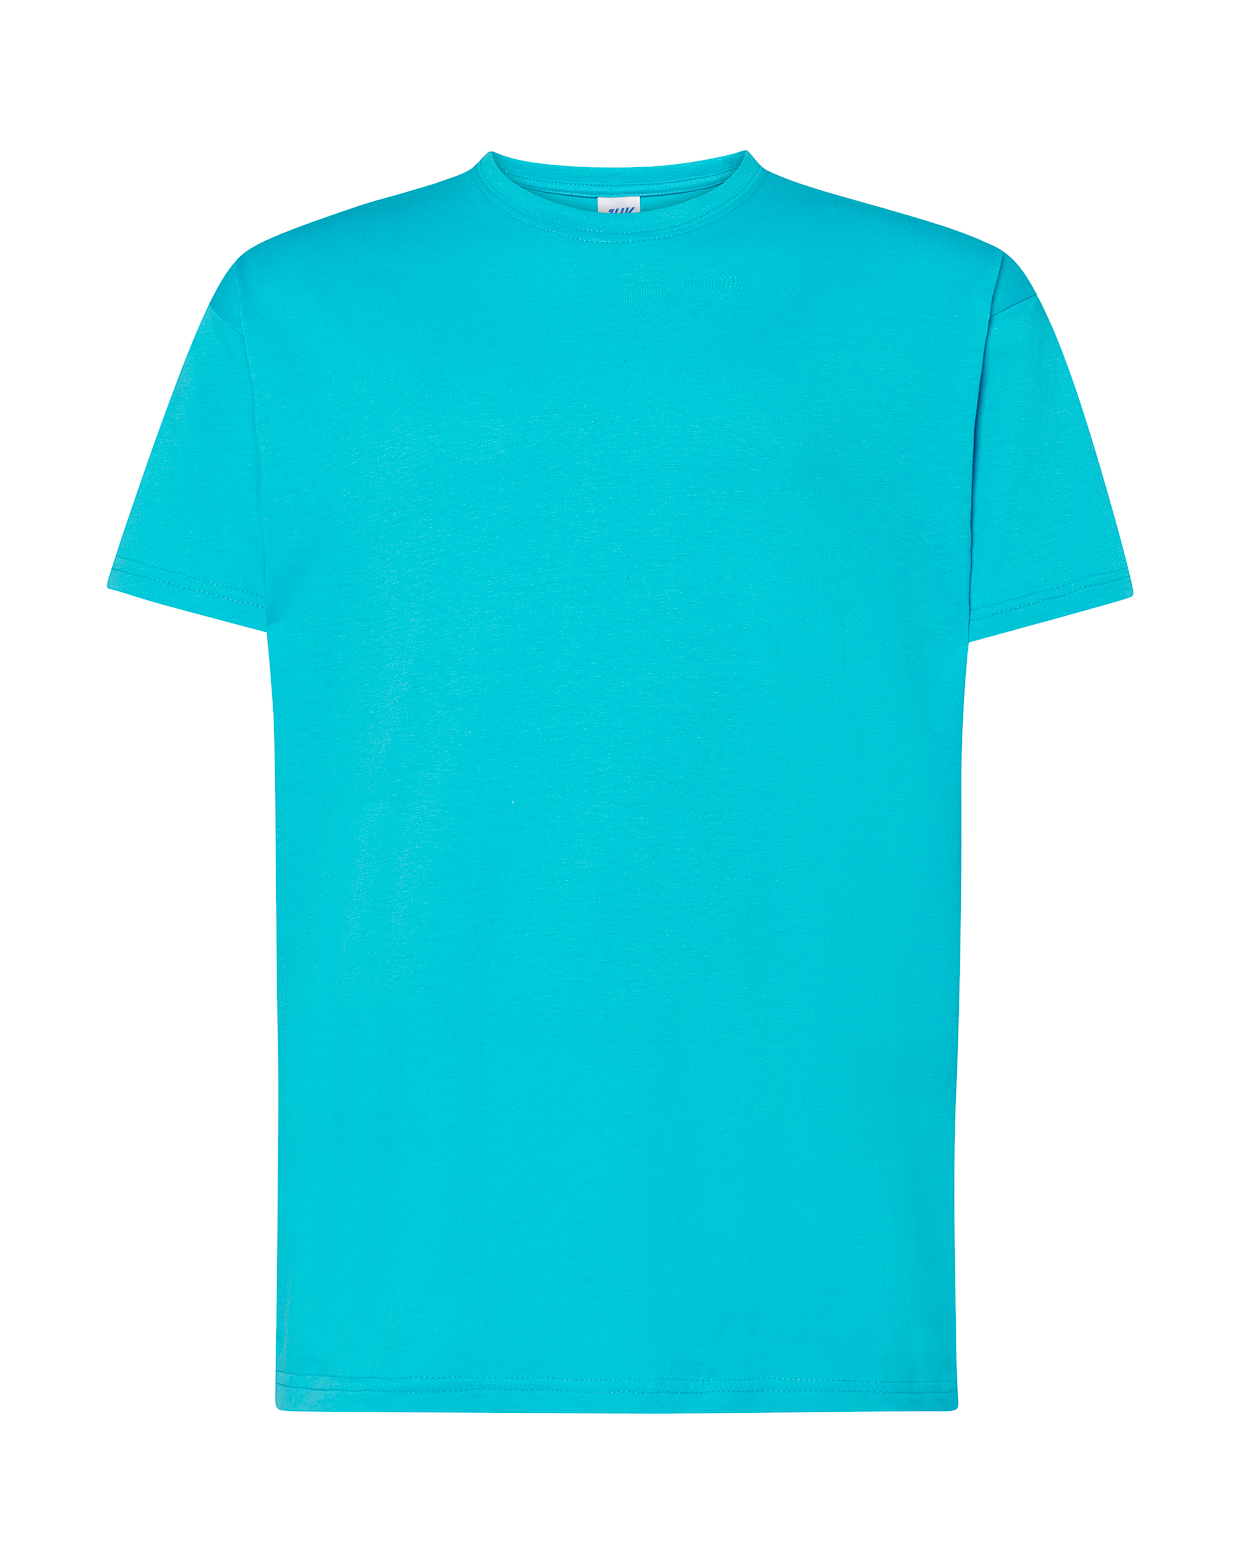 Camisetas básicas de hombre en todos los colores y por menos de 30 euros